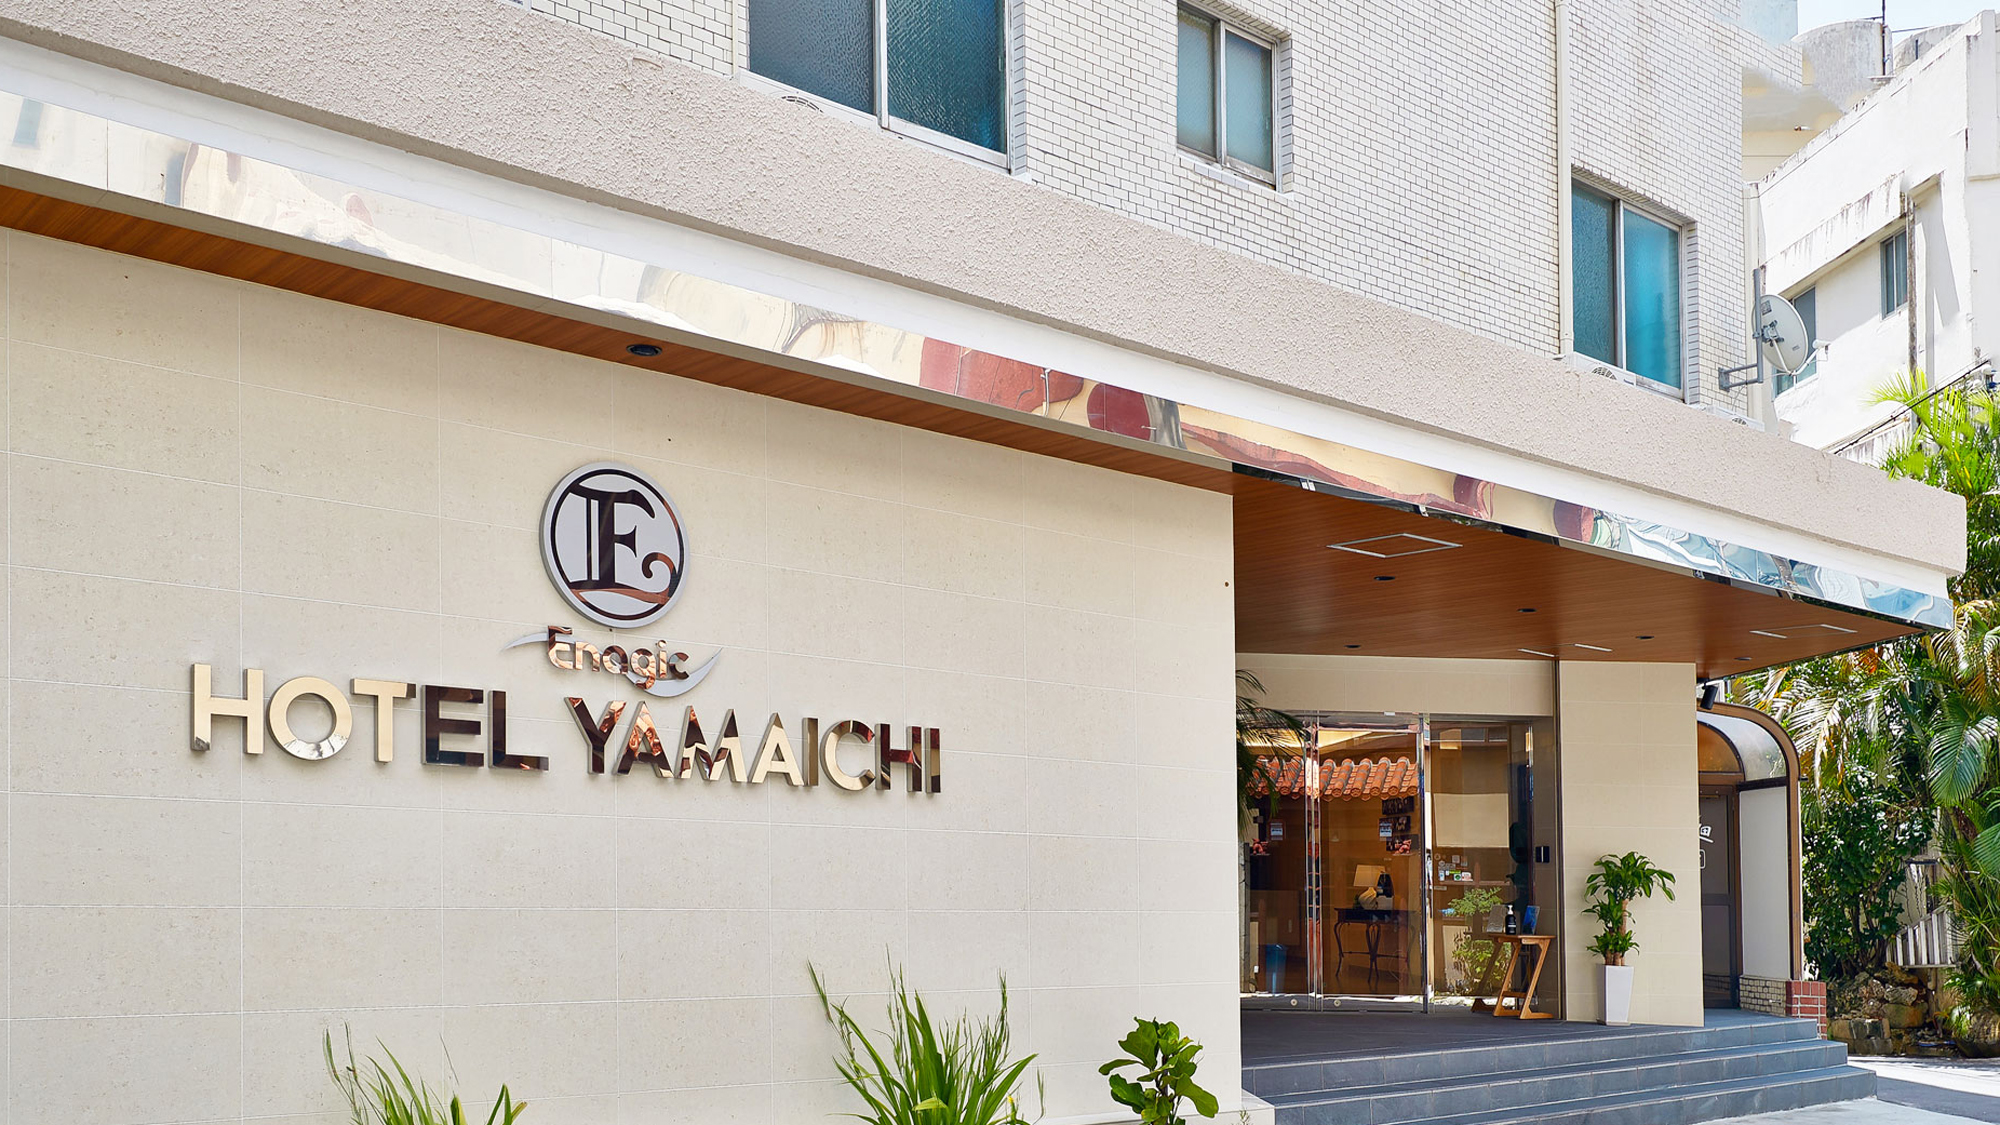 Enagic Hotel Yamaichi